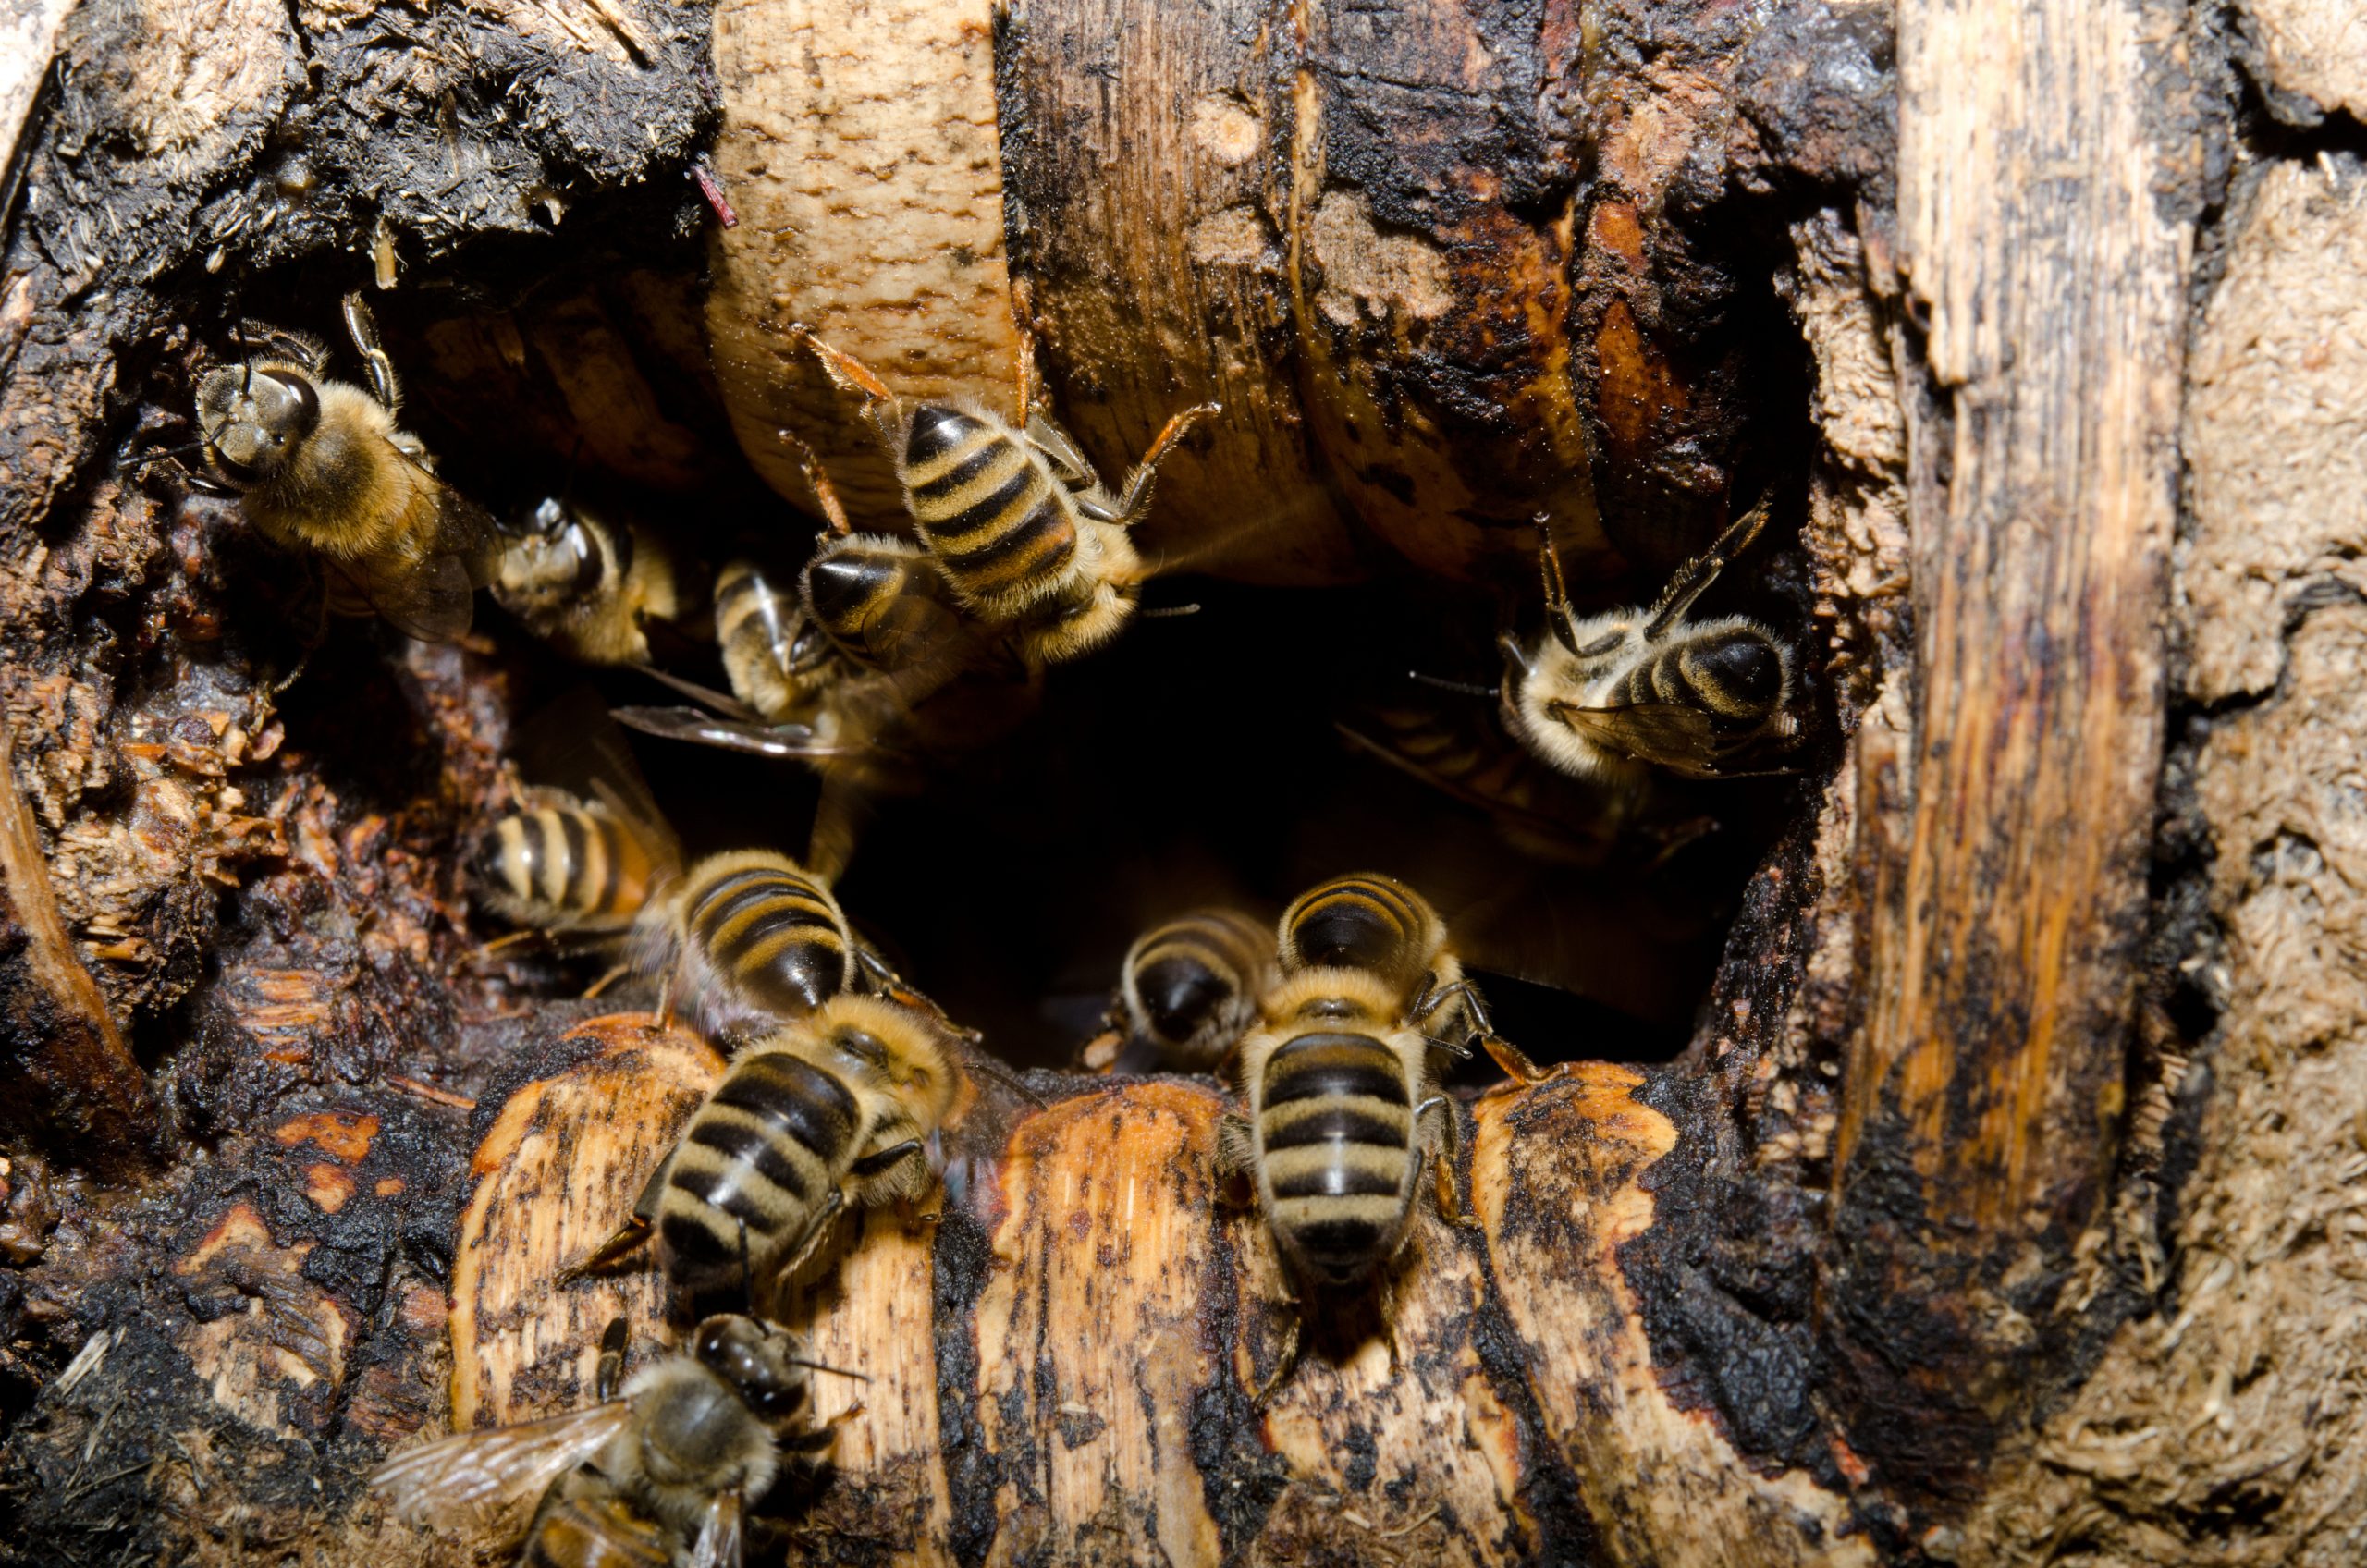 Namibia Honeybees Under Threat